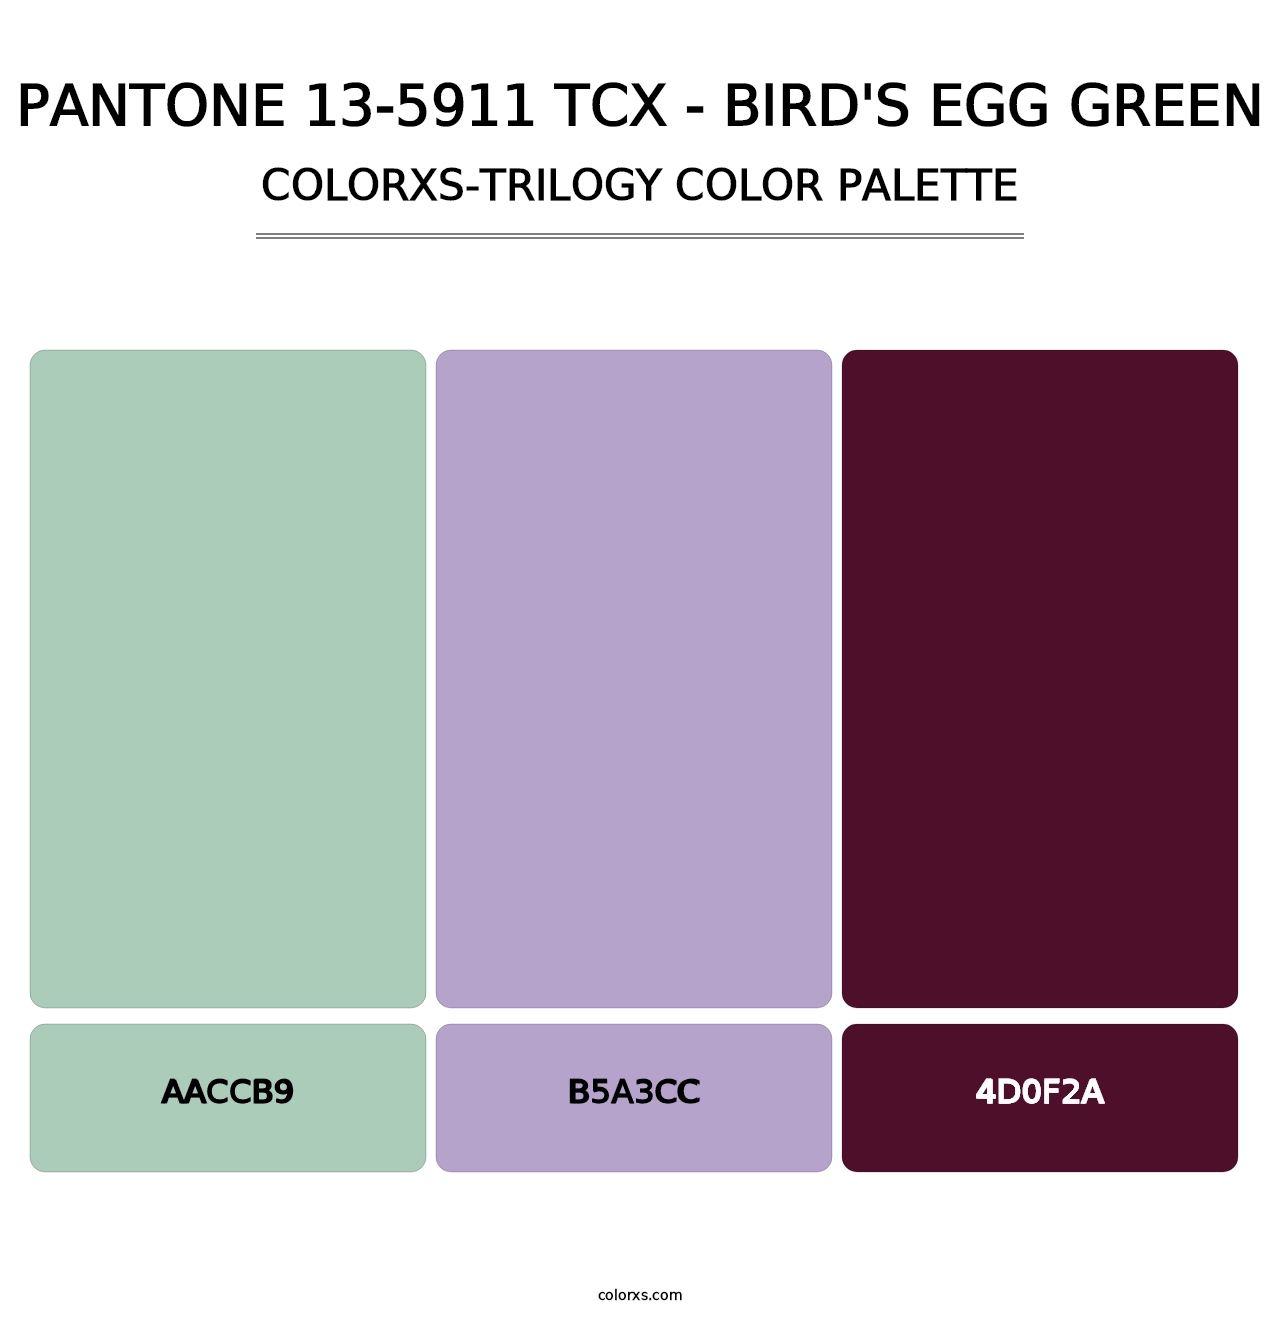 PANTONE 13-5911 TCX - Bird's Egg Green - Colorxs Trilogy Palette